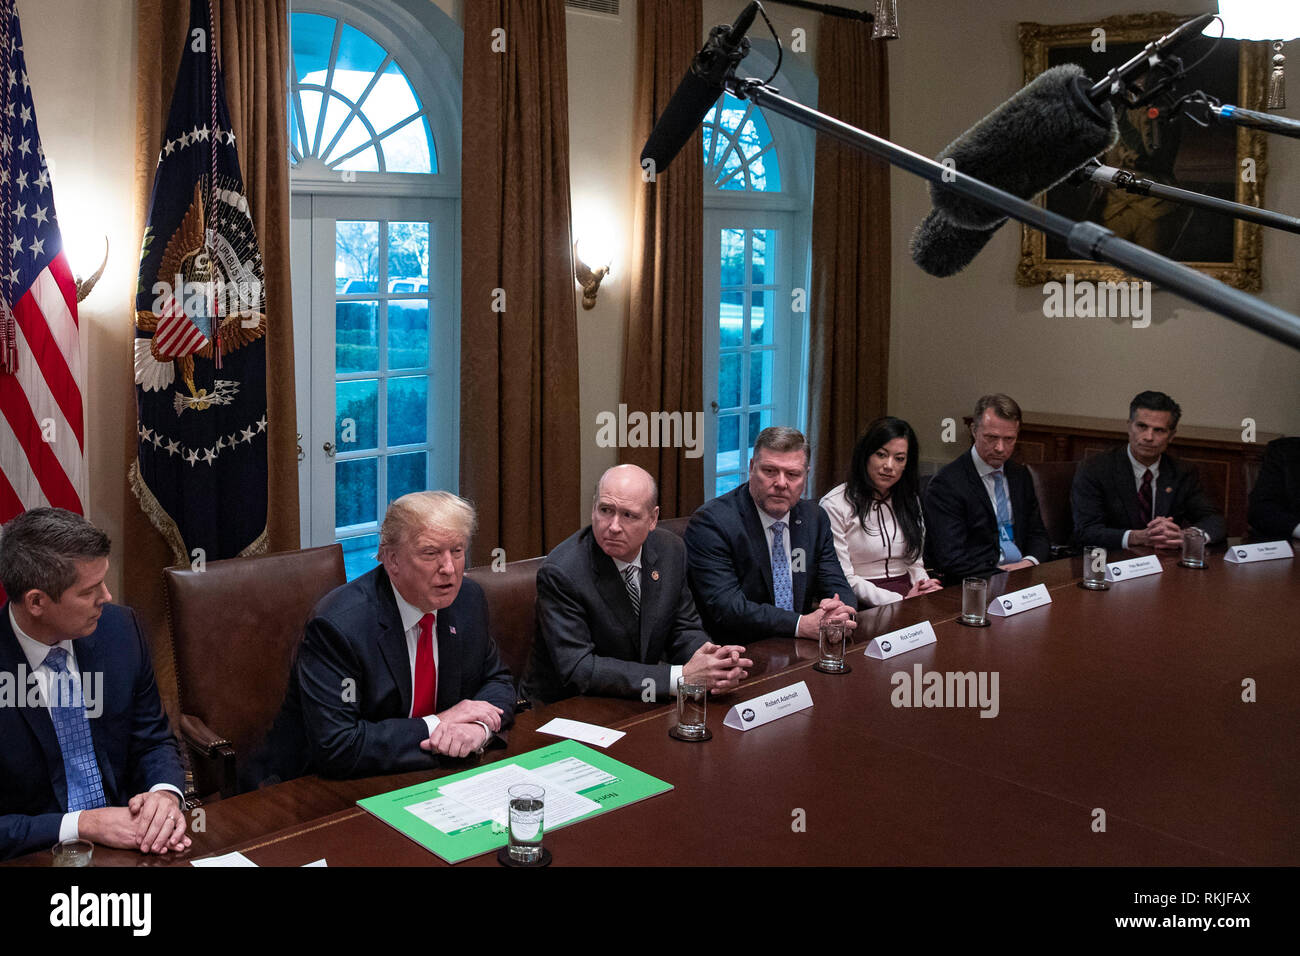 Le Président américain Donald Trump s'adresse aux journalistes dans la salle du Cabinet alors qu'il se prépare comme il se réunit avec les législateurs républicains pour discuter des projets d'échange à la Maison Blanche, à Washington, D.C. le 24 janvier 2019. Banque D'Images